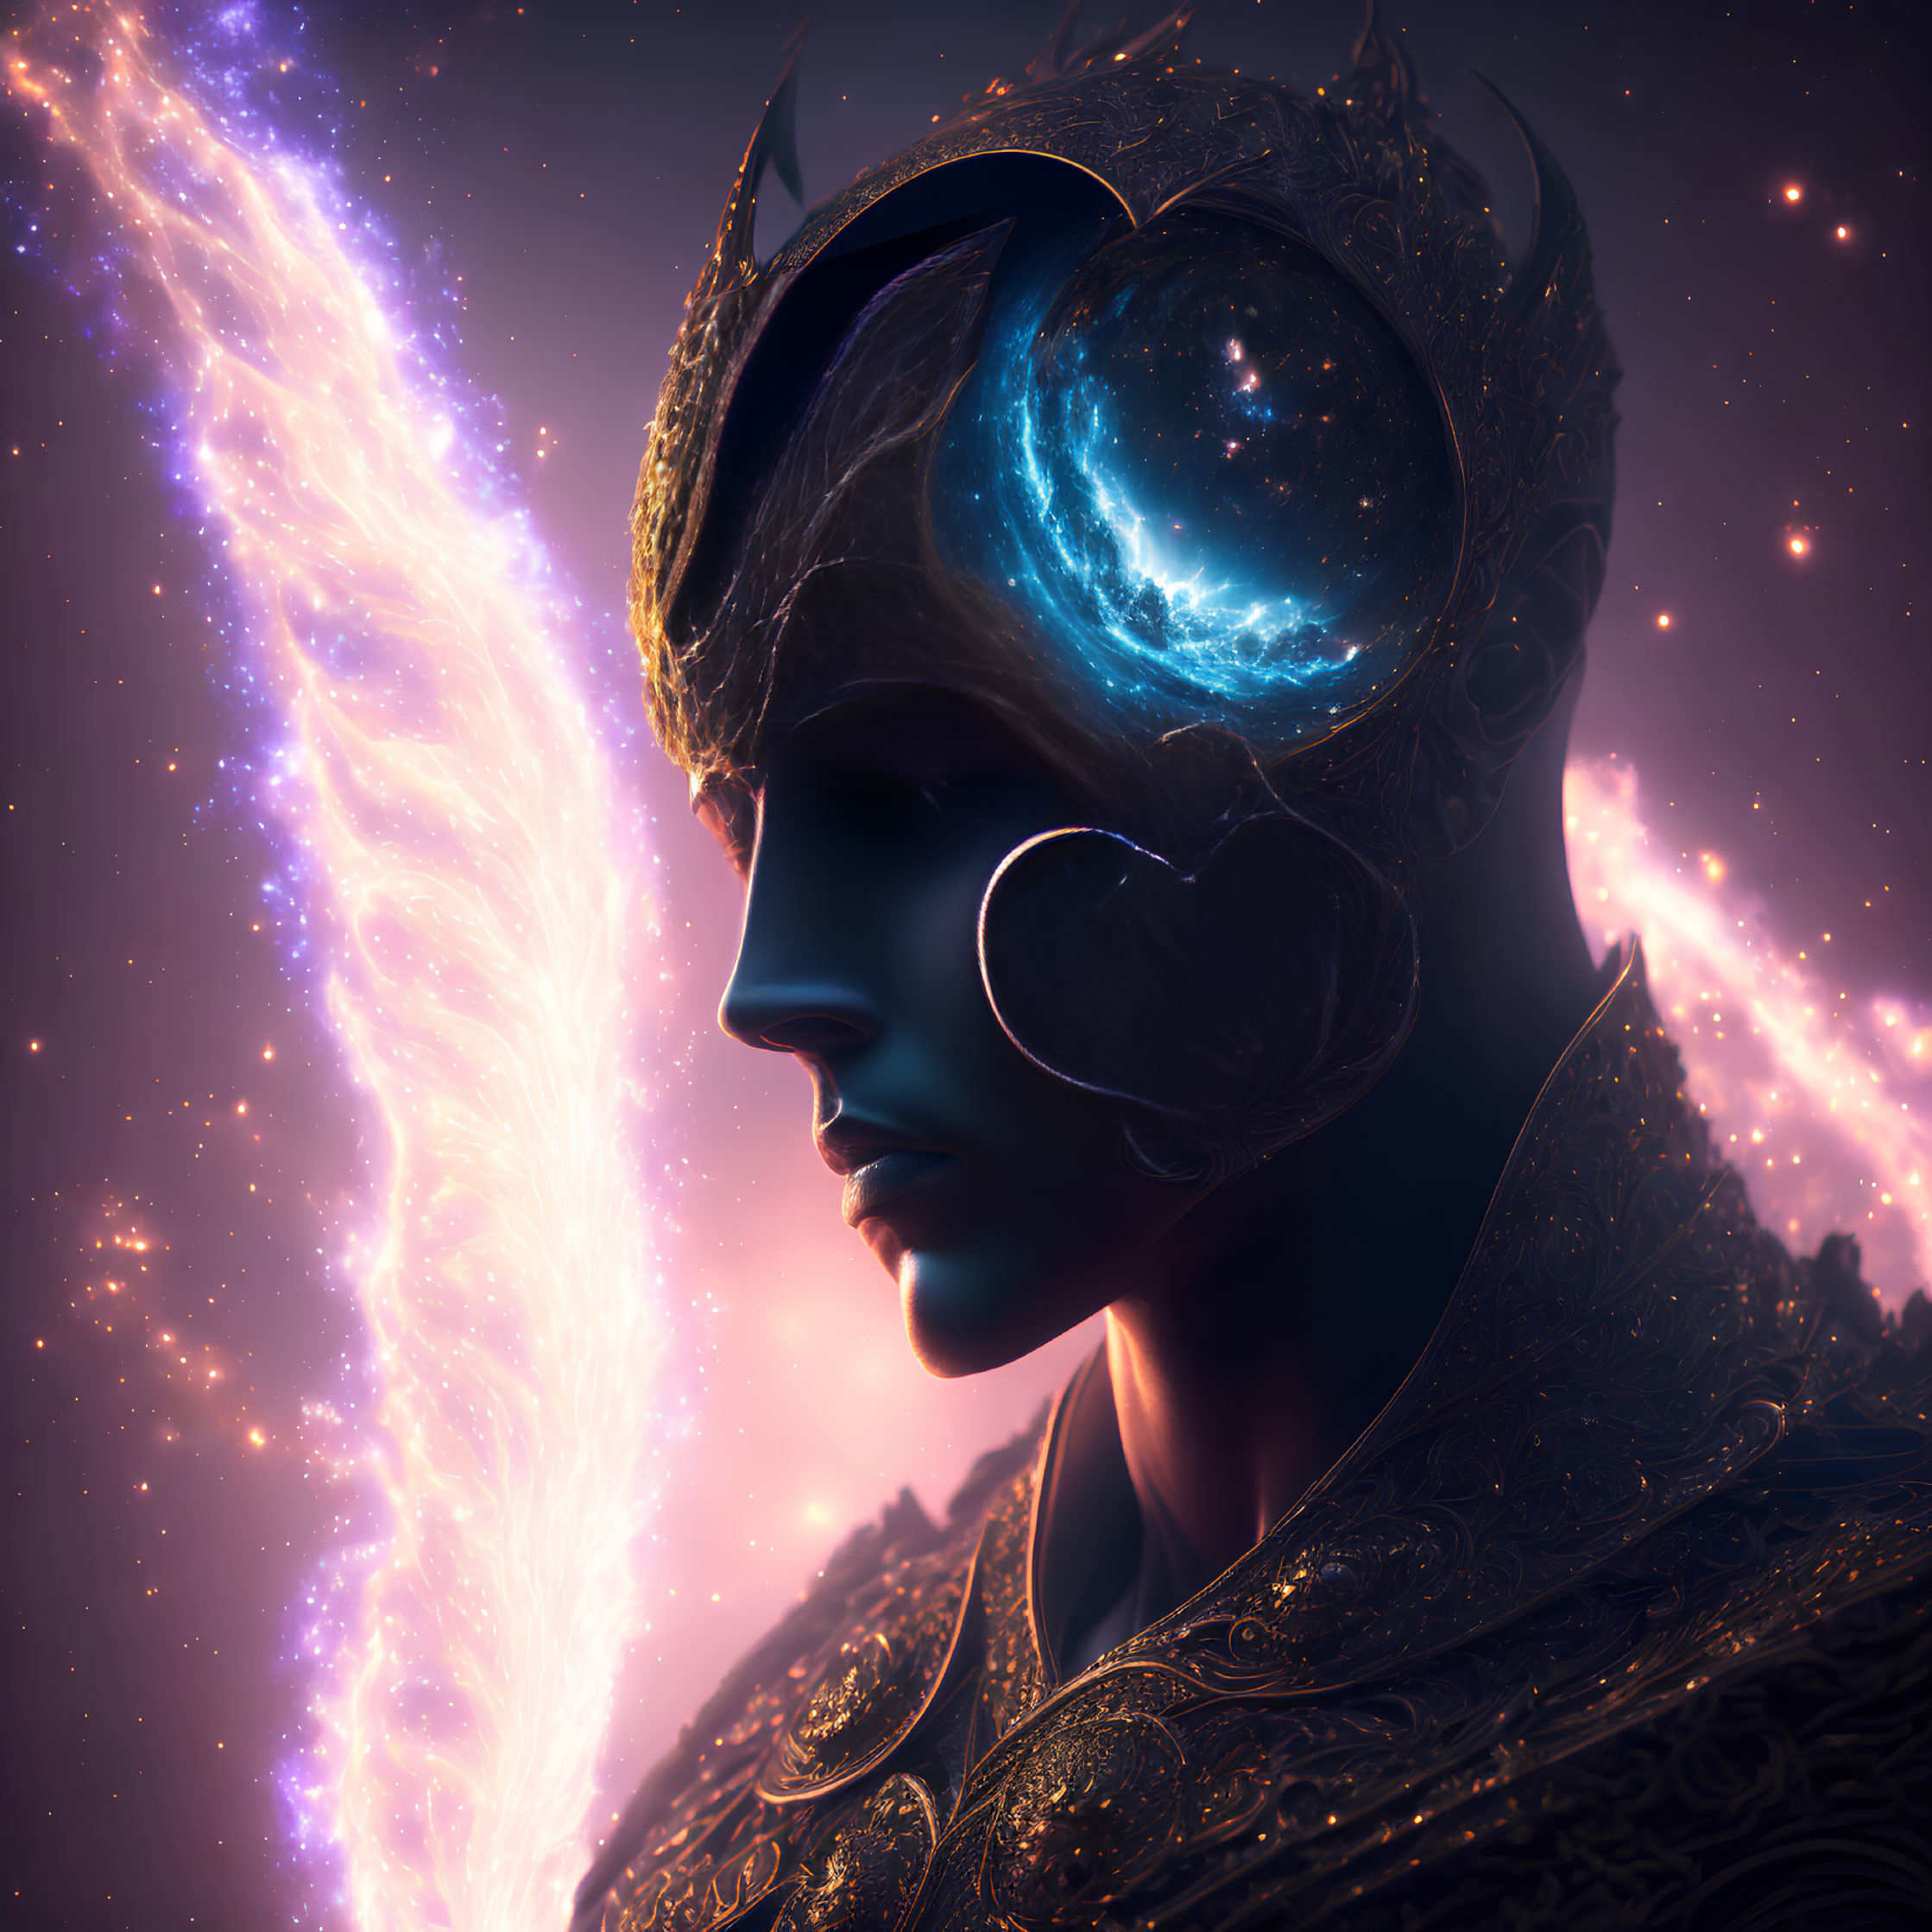 Regal figure with galaxy helmet in cosmic digital artwork